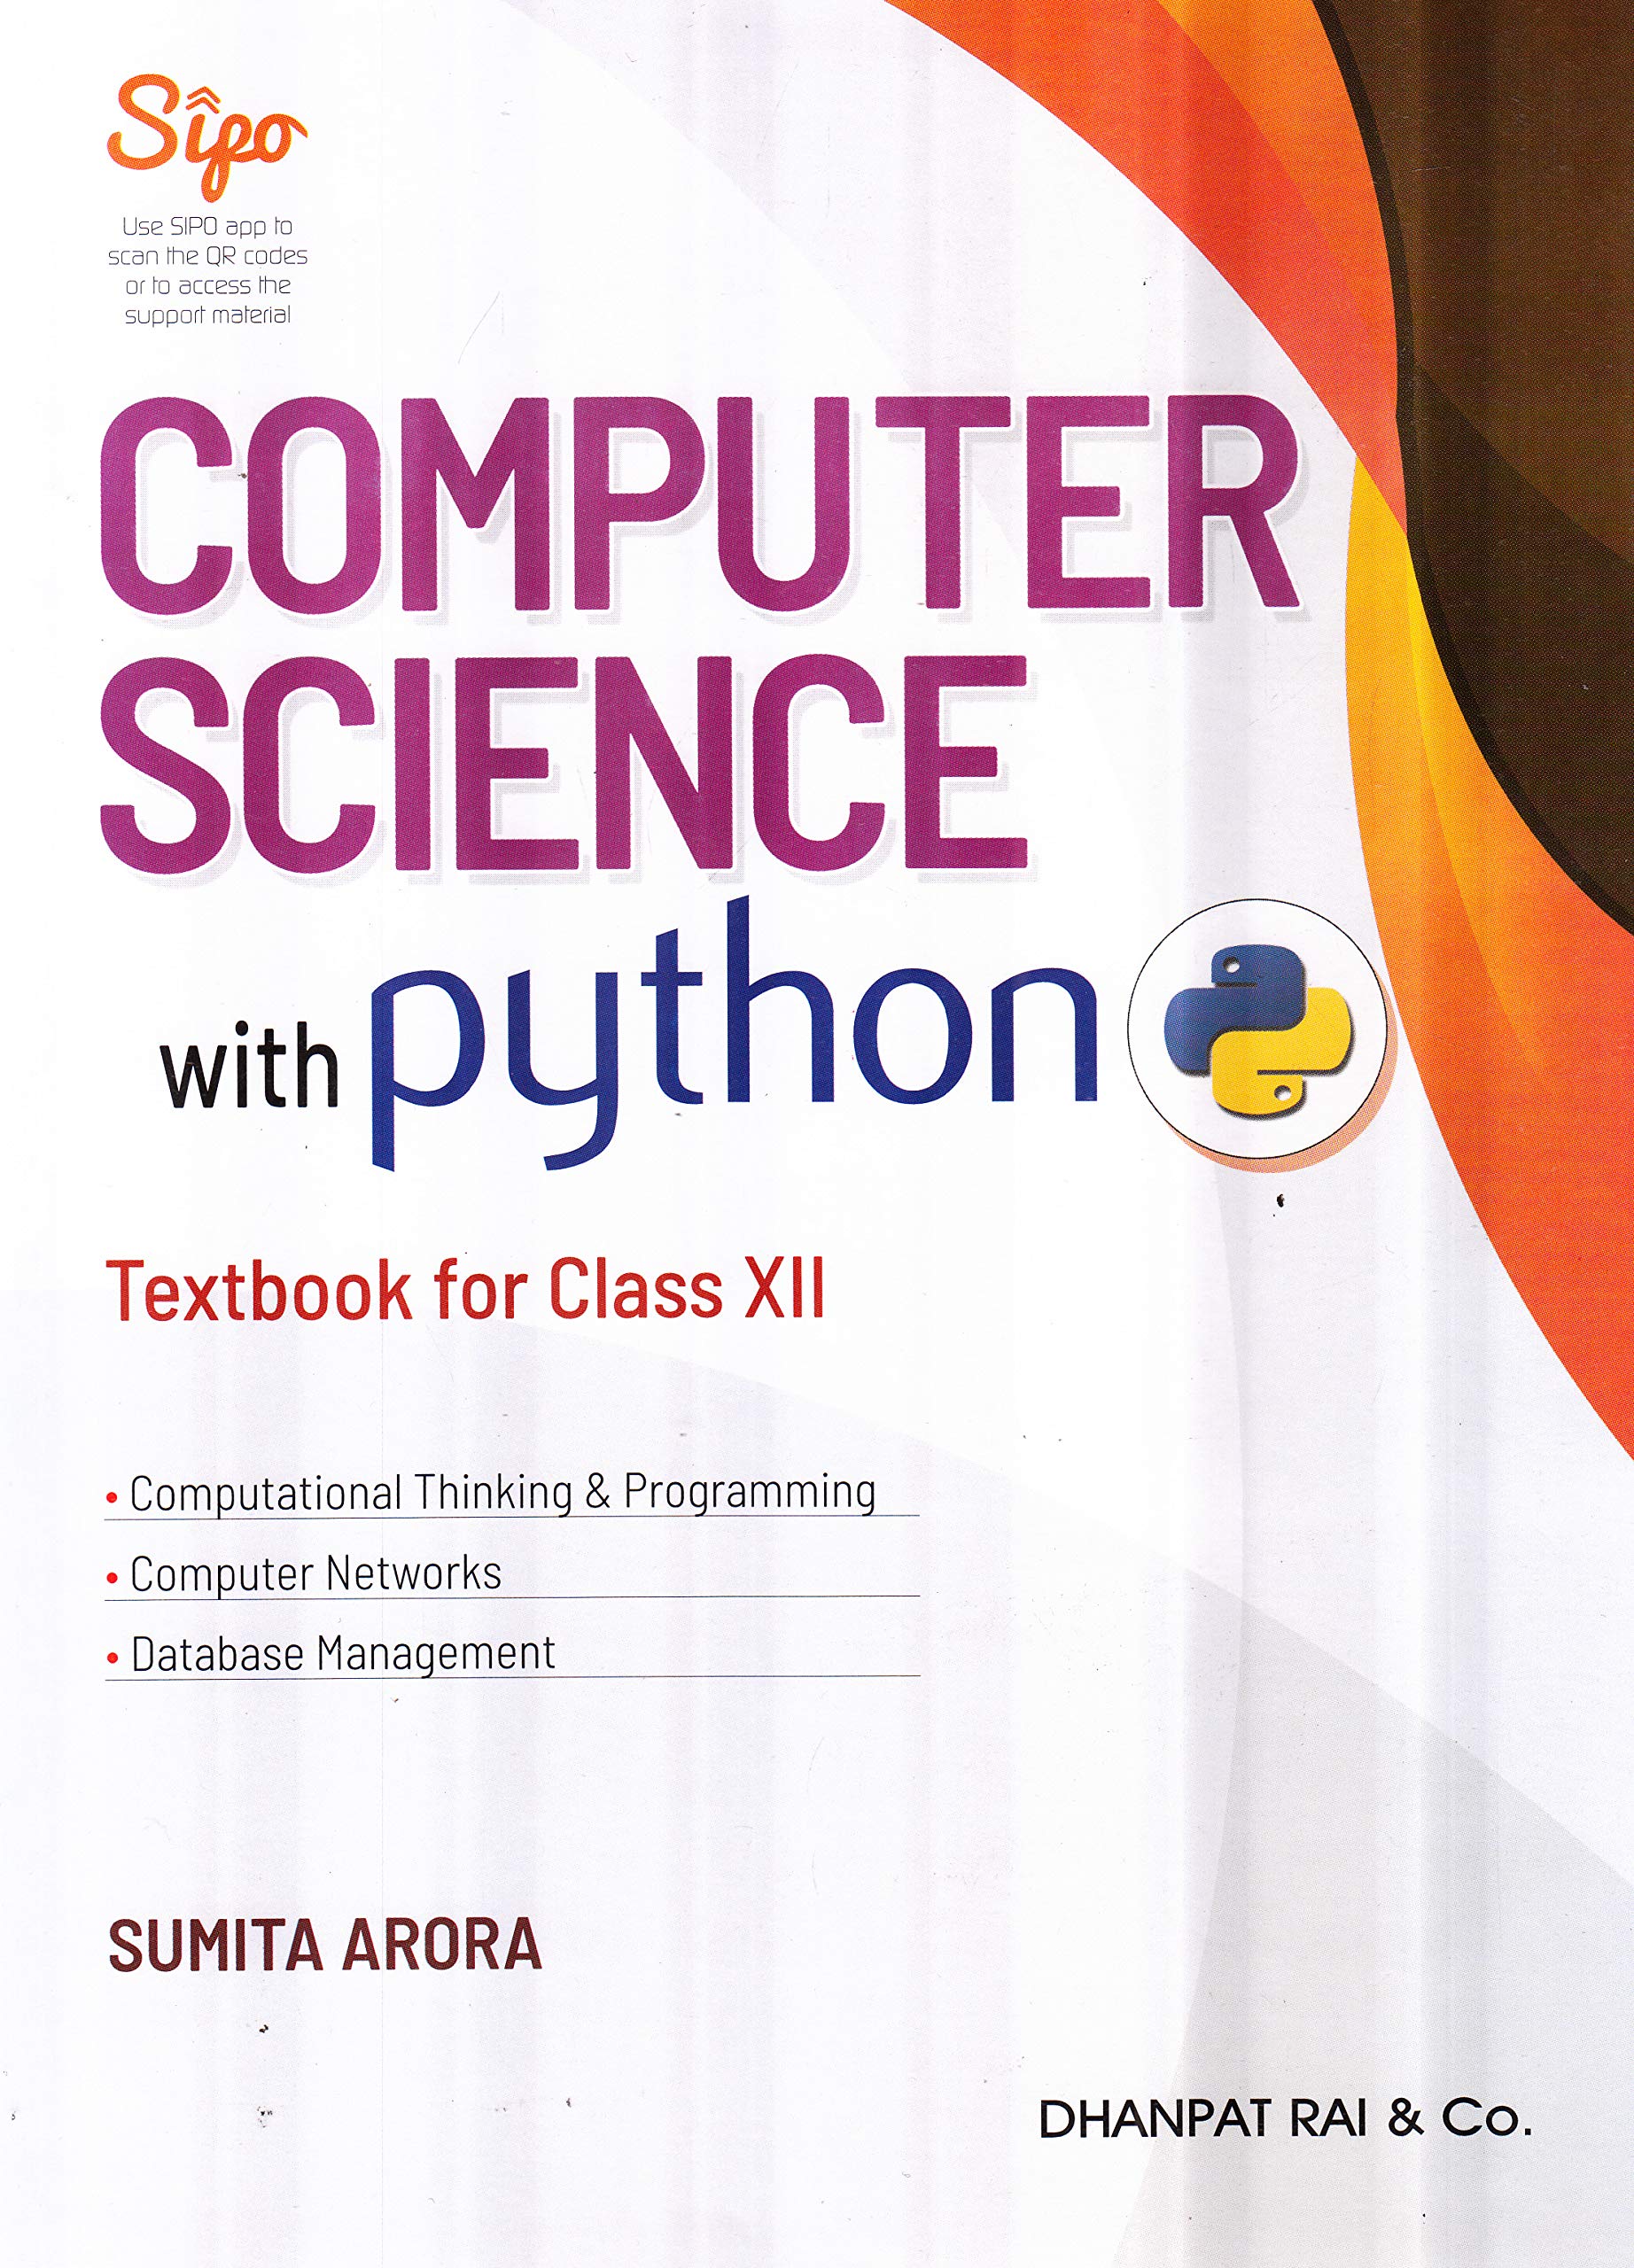 sumita arora python class 11 textbook pdf